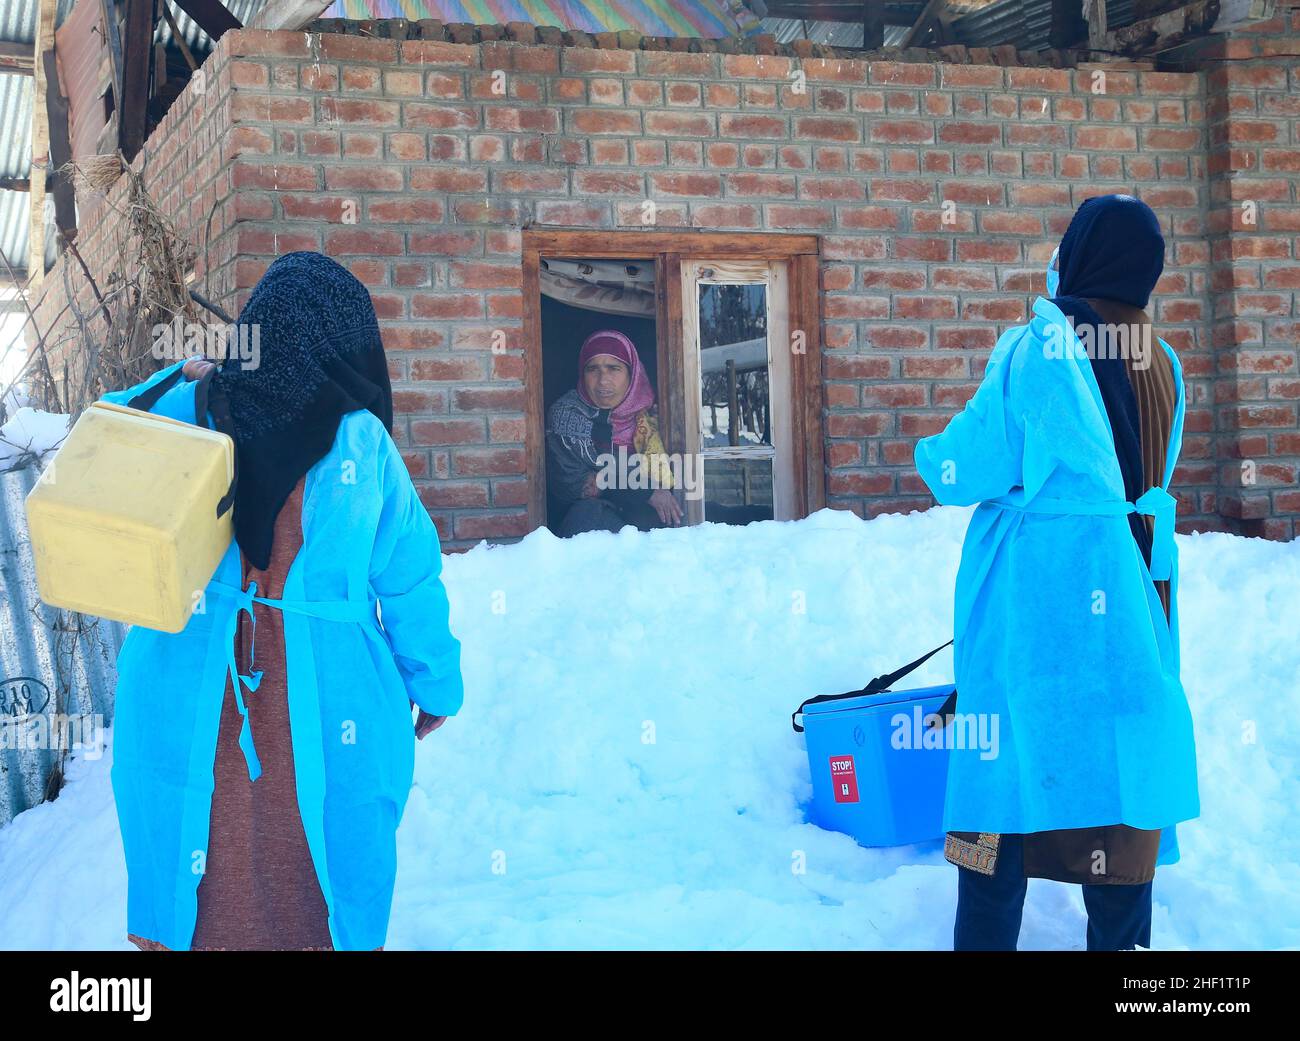 Gli operatori sanitari parlano con la donna del Kashmiri mentre arrivano durante una campagna di vaccinazione porta a porta al villaggio di Malvaa Snowbound nel distretto di Baramulla nel Kashmir settentrionale, a circa 56 chilometri da Srinagar, la capitale estiva del Kashmir indiano. Nonostante le strade fredde e completamente innevate, questi operatori sanitari nella valle del Kashmir stanno sfidando le condizioni meteorologiche difficili e andando da porta a porta per vaccinare people.in un'area lontana-flung della valle del Kashmir, un team di operatori medici che trasportano scatole di vaccinazione e altri materiali inizia la loro campagna di vaccinazione mentre camminano sulla nar coperta di neve Foto Stock